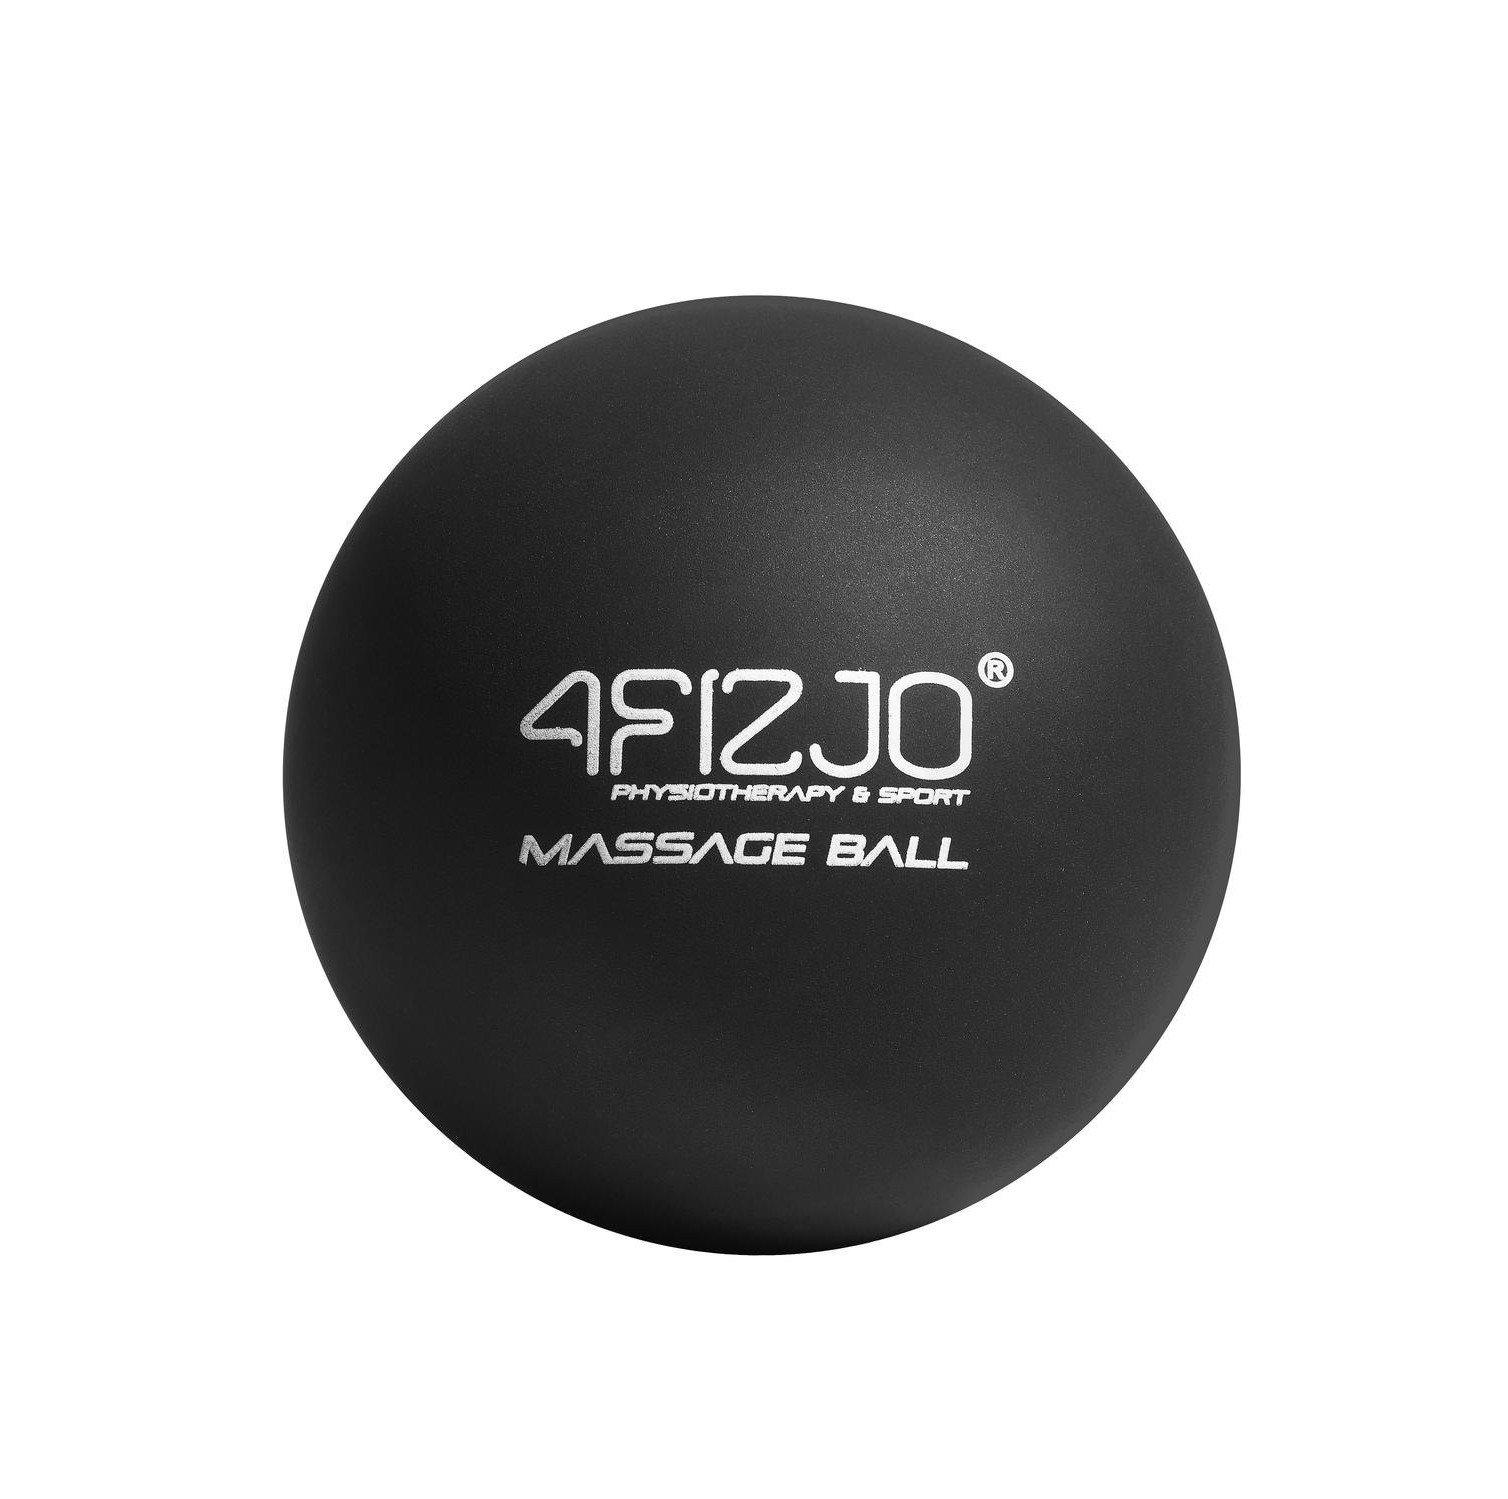 Массажный мяч 4FIZJO Lacrosse Ball 6.25 см 4FJ1196 Black